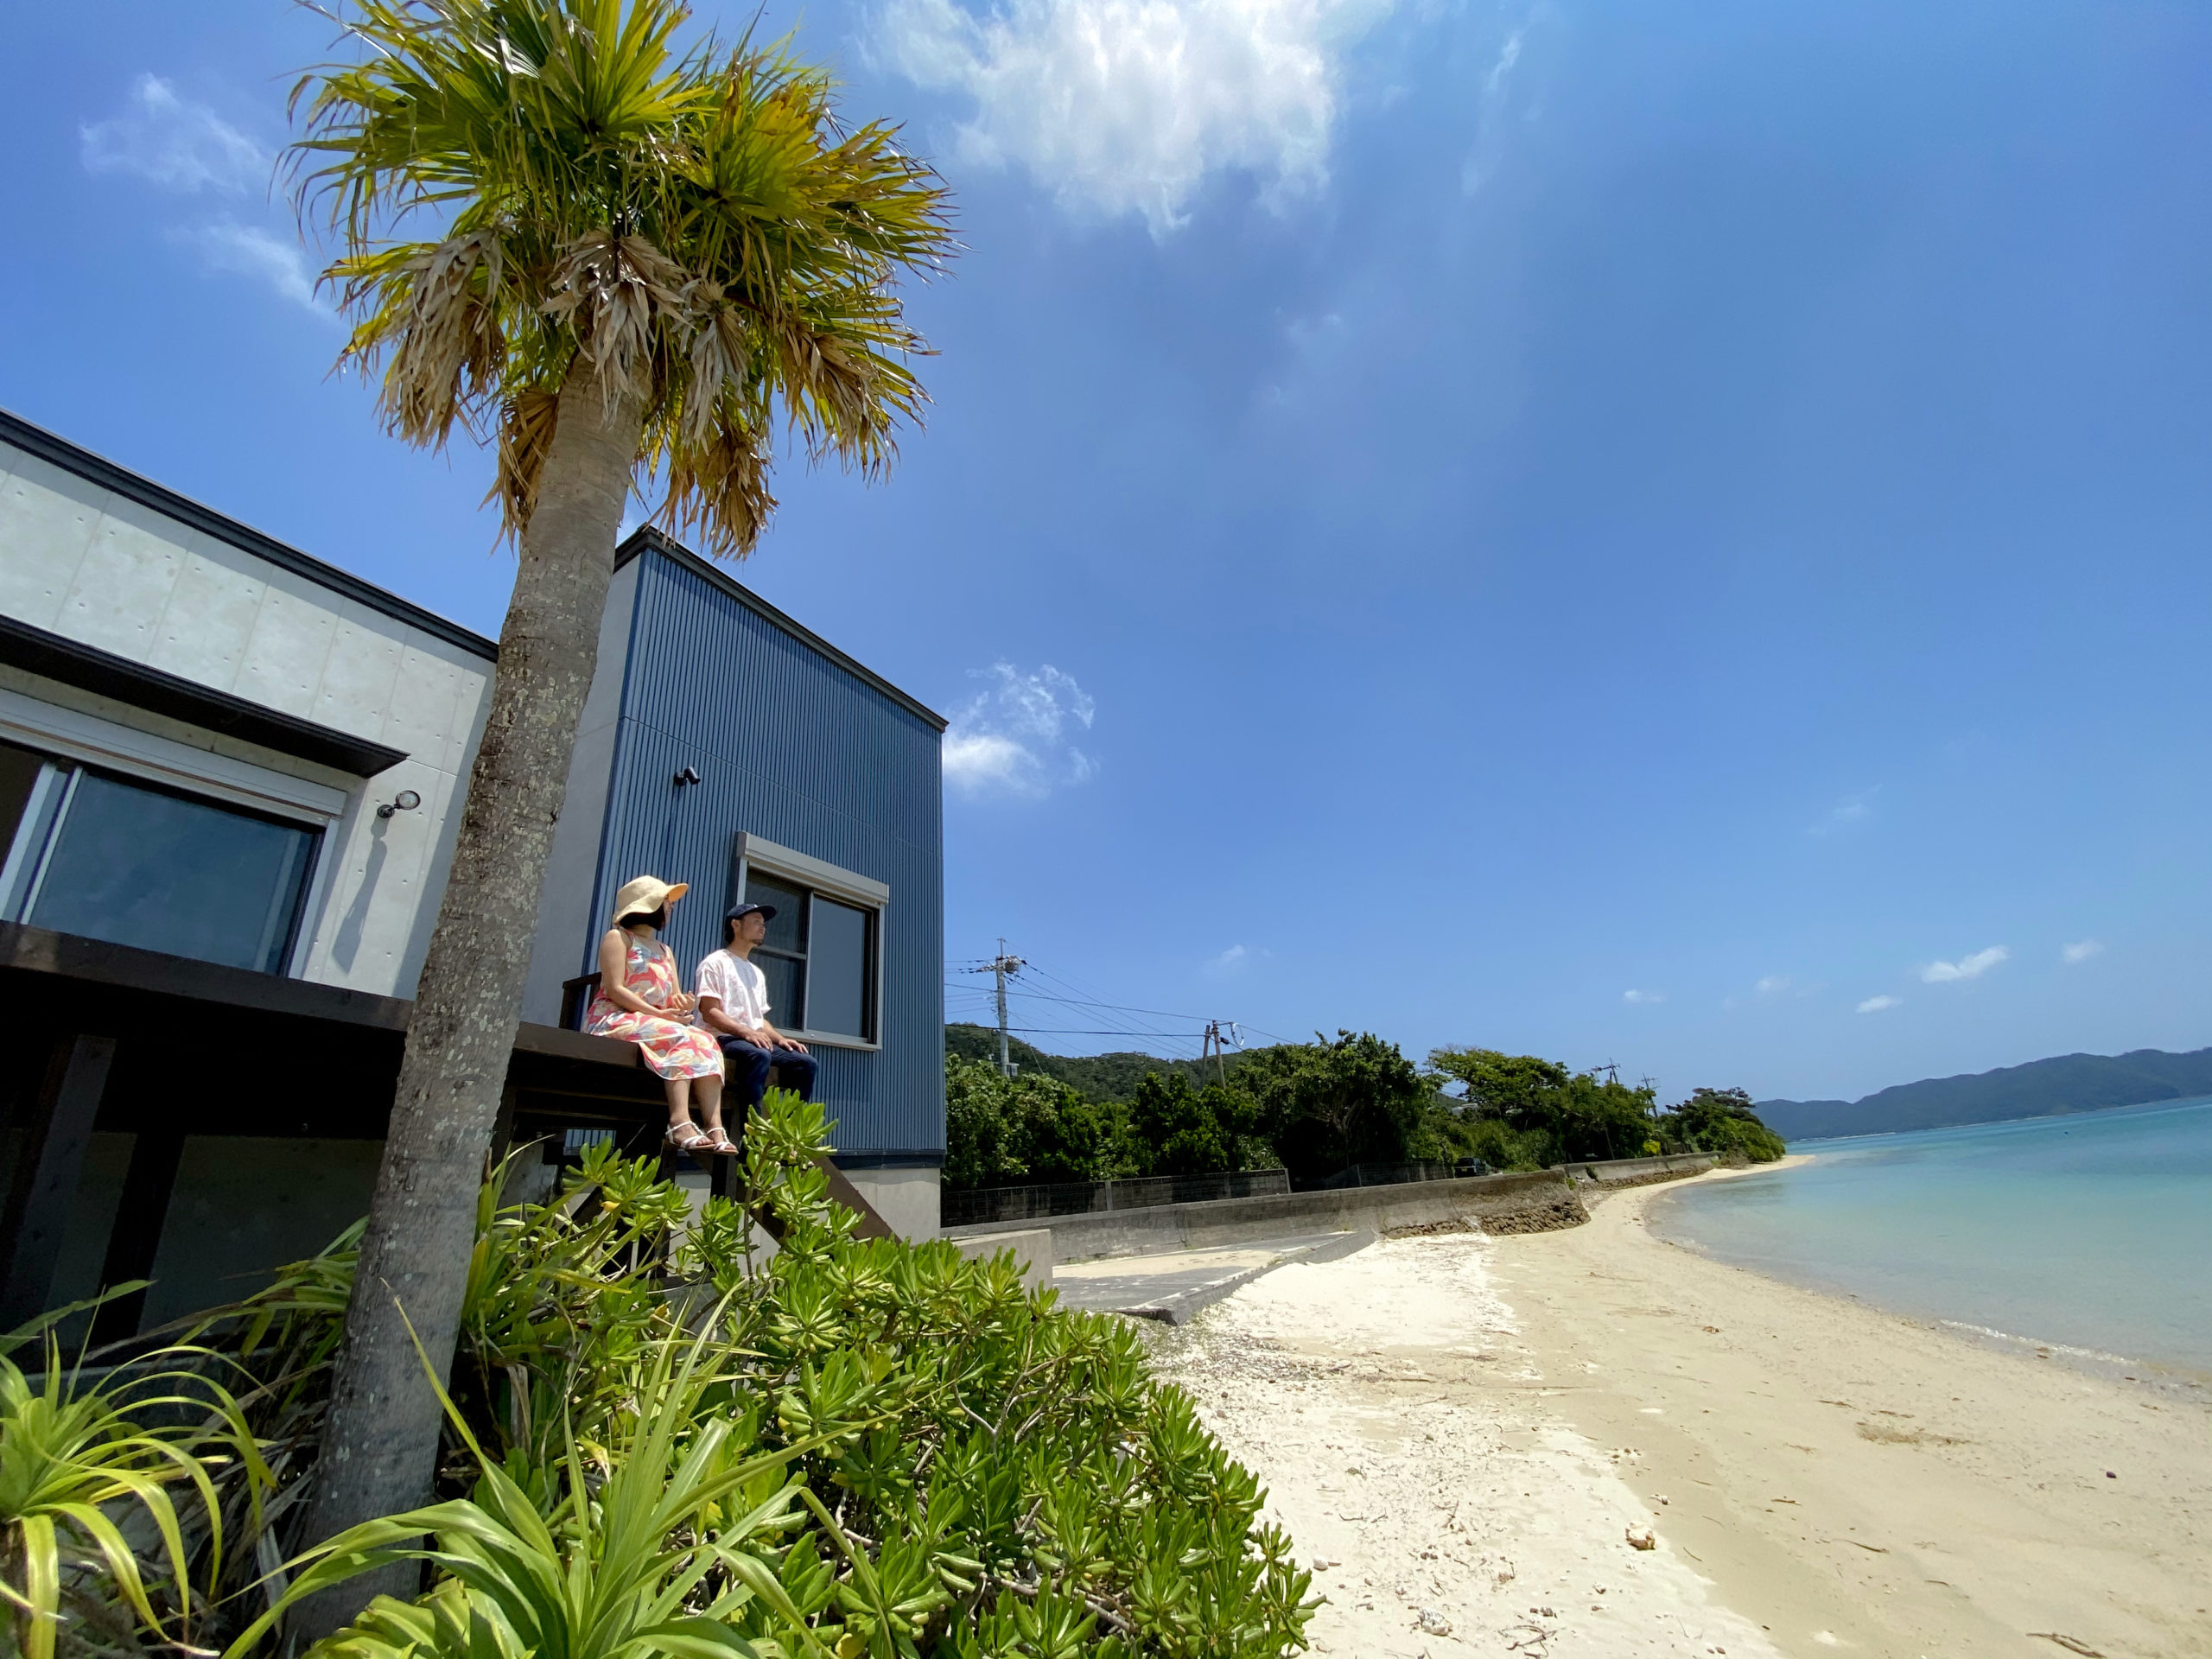 公式 Isola Villa Amami イゾラヴィラ奄美 奄美大島で随一のリゾート地 芦徳 に位置するイゾラヴィラ 海まで半歩 サラサラの白砂ビーチに建てられた1日1組限定のプライベート別荘 海好きにはたまらない空間がここにはあります 芦徳の7つの青が生み出す絶景の